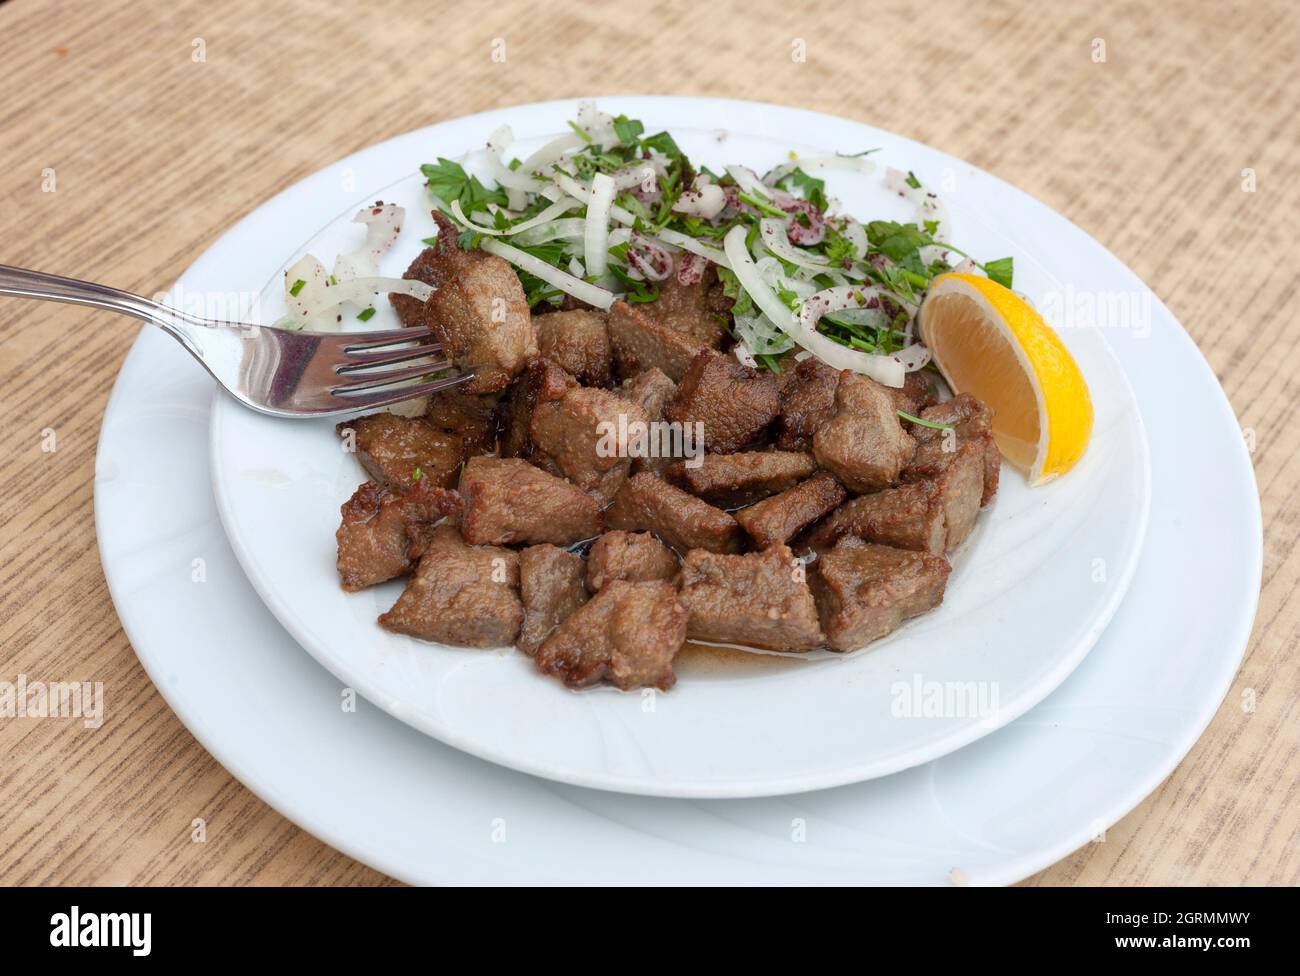 Albanian liver food, cayenne liver, liver, lung, kidney food, liver fries, Arnavut ciğeri, Turkish traditional fried liver. Stock Photo